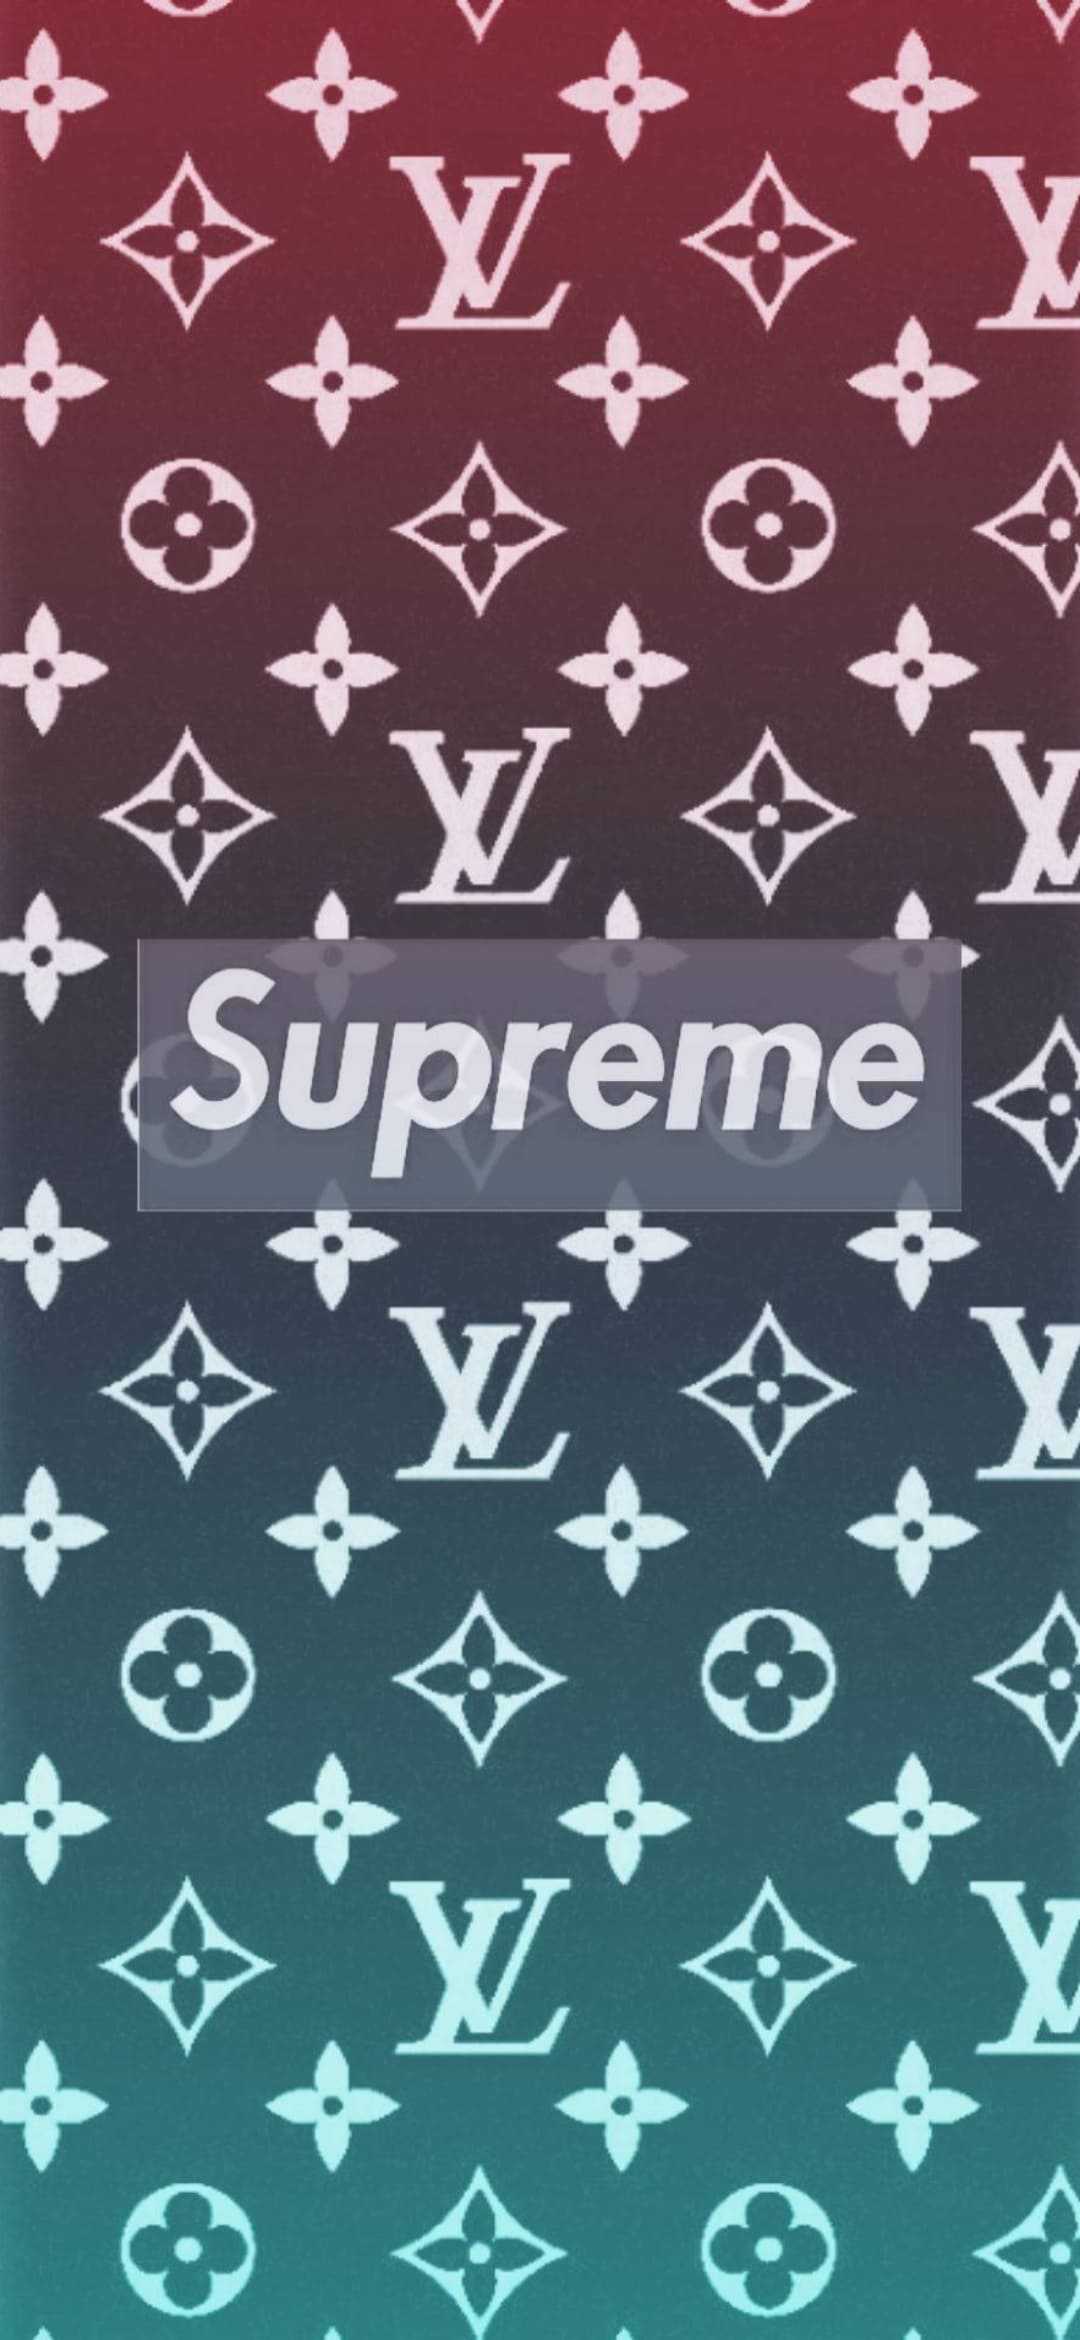 Supreme x Louis Vuitton  Supreme wallpaper, Supreme iphone wallpaper, Louis  vuitton iphone wallpaper